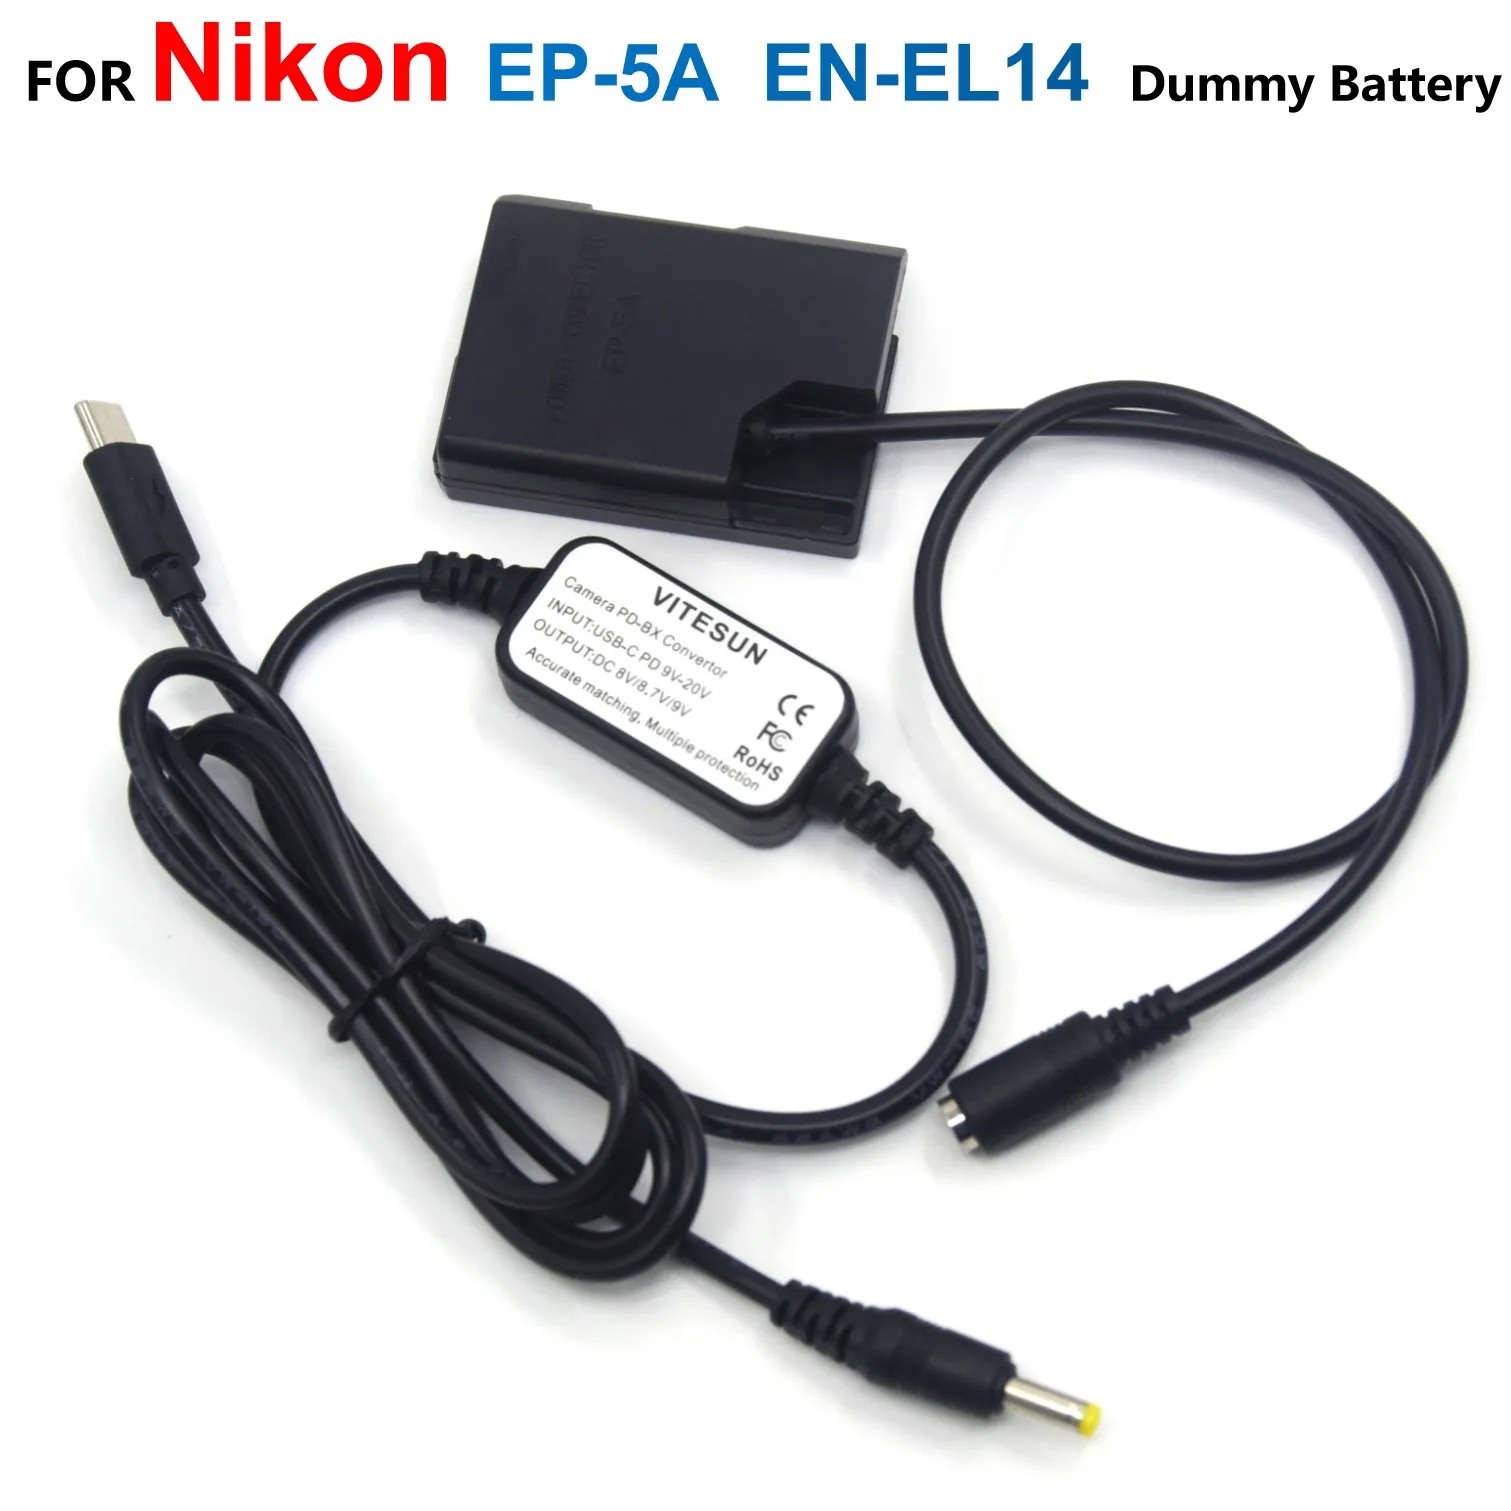 

EP-5A DC Coupler EN-EL14 ENEL14 Dummy Battery + MH-24 USB-C PD Adapter Cable EH5A For Nikon P7800 D5500 D5600 D3300 D3400 D5100